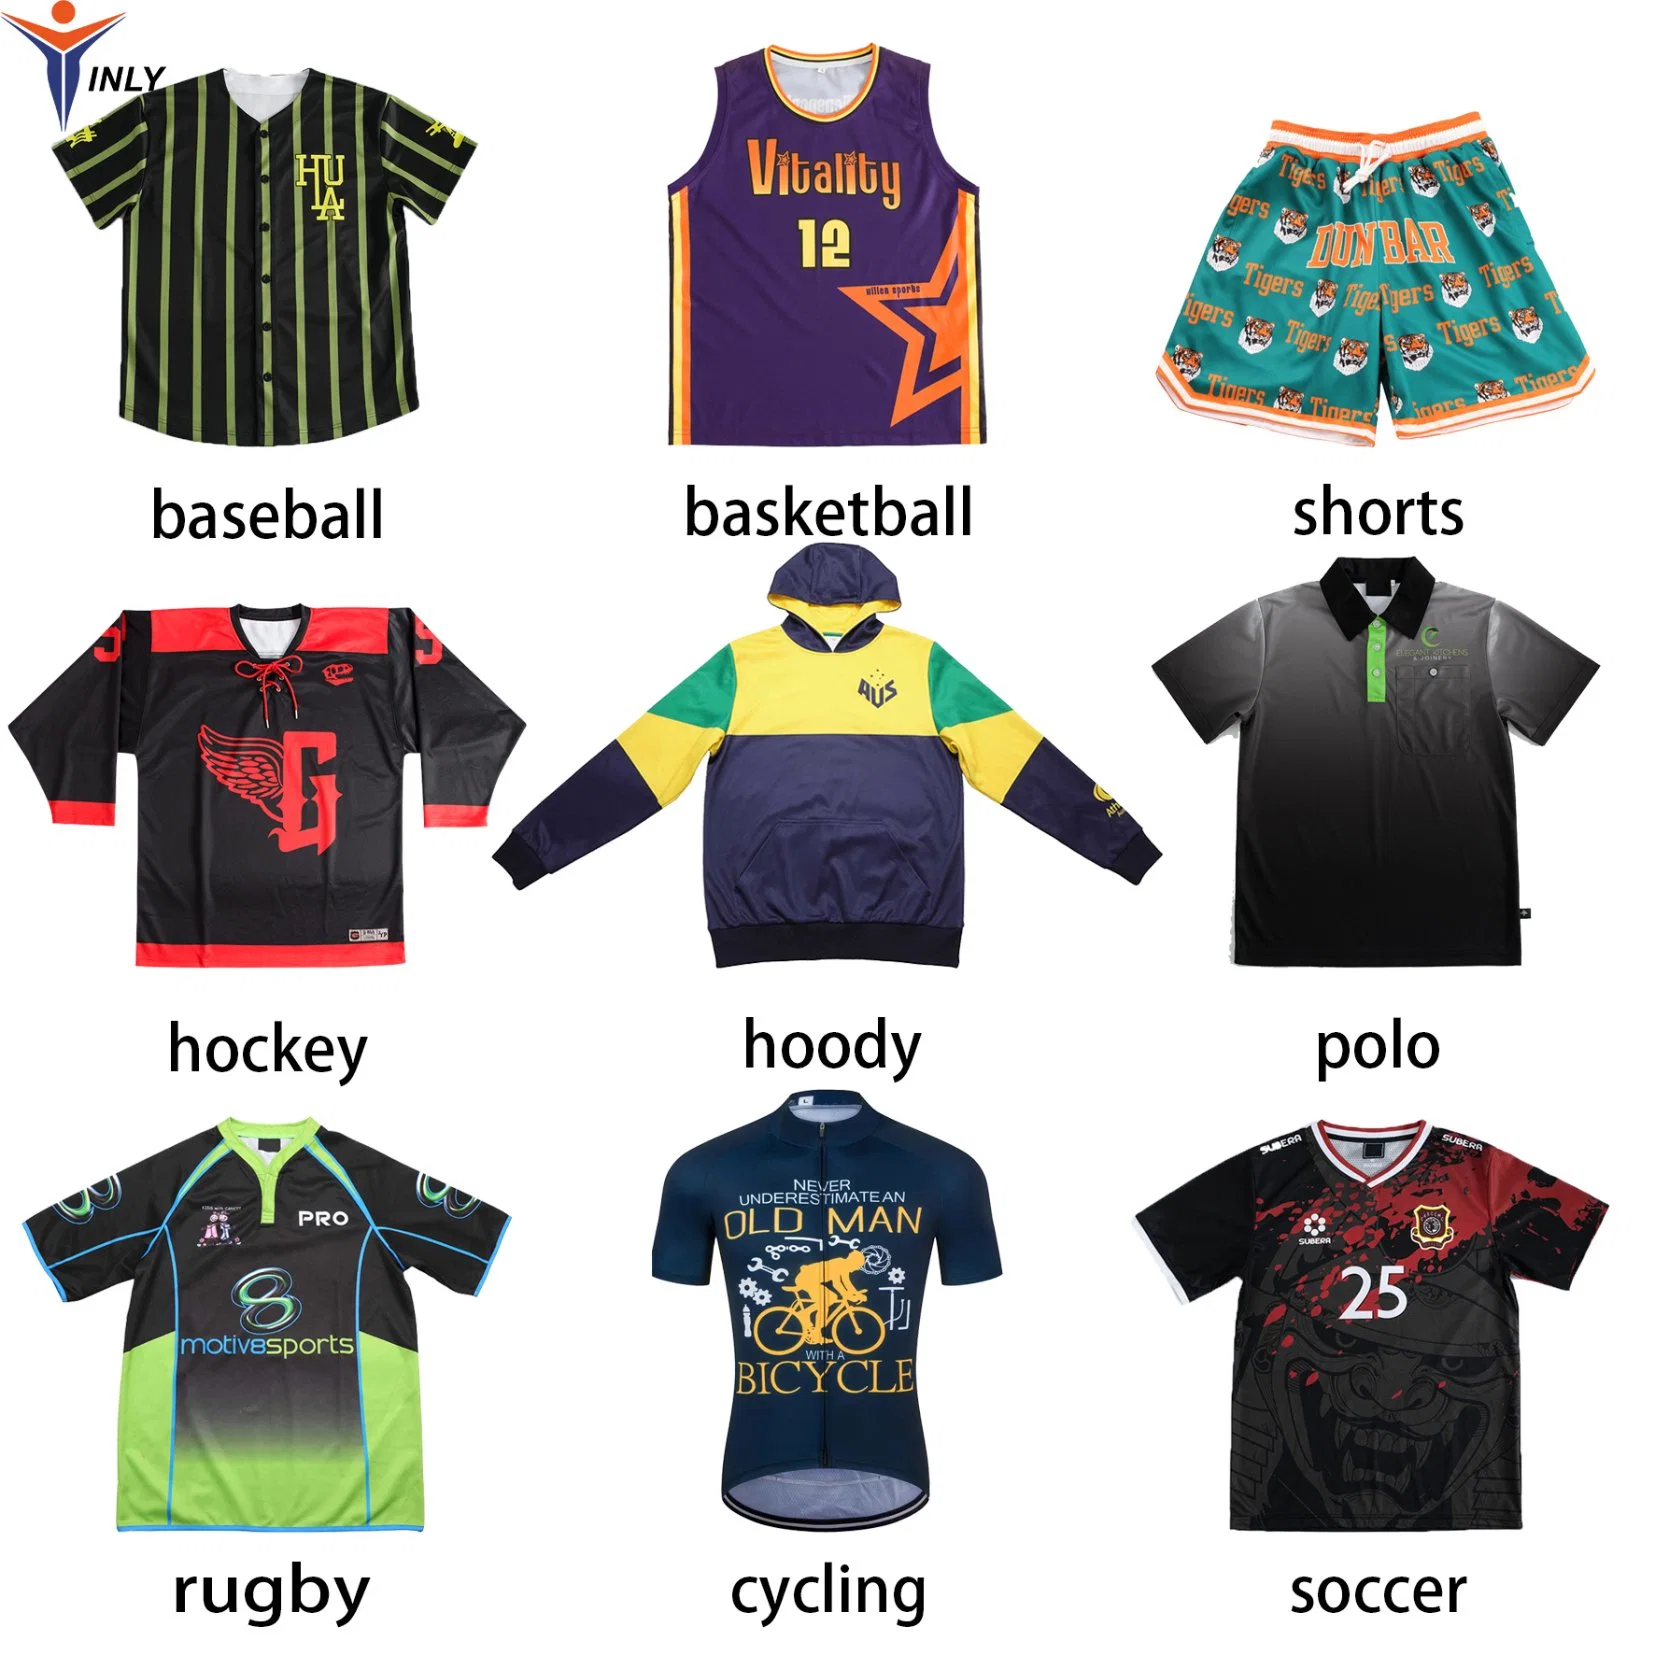 Roupa esportiva de sublimação por atacado personalizada para hóquei, rugby, beisebol, academia, shorts de basquete, uniforme de polo, camisa de ciclismo, camisa de futebol e camisa de futebol.